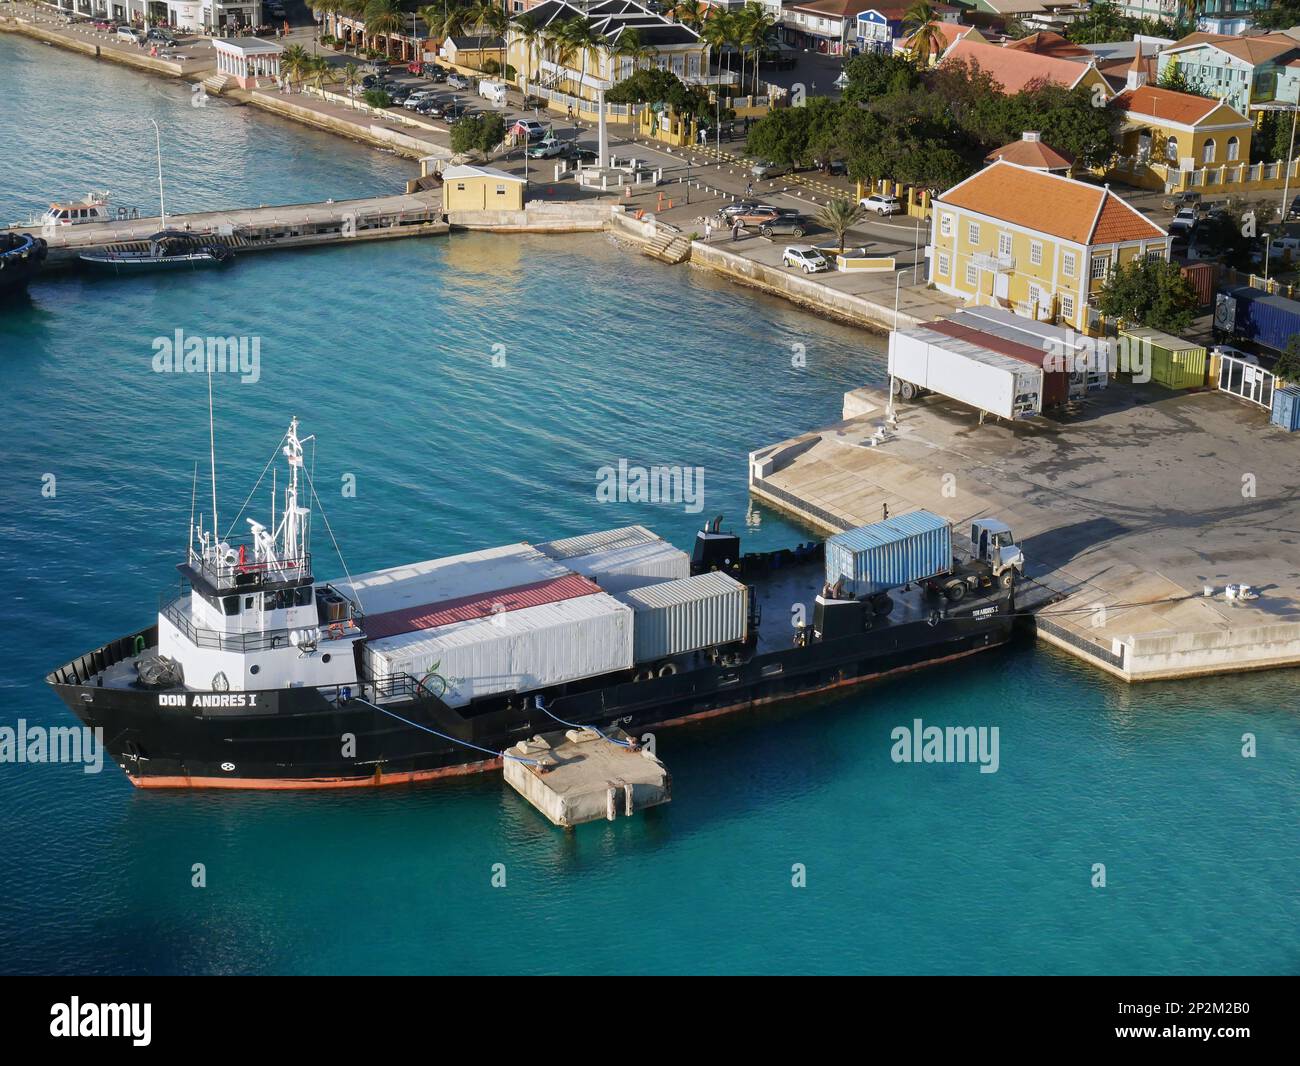 Le navire de ravitaillement en mer Don Andres prend des cargaisons conteneurisées à Kralendijk, Bonaire, Leeward Antilles, Caraïbes Banque D'Images